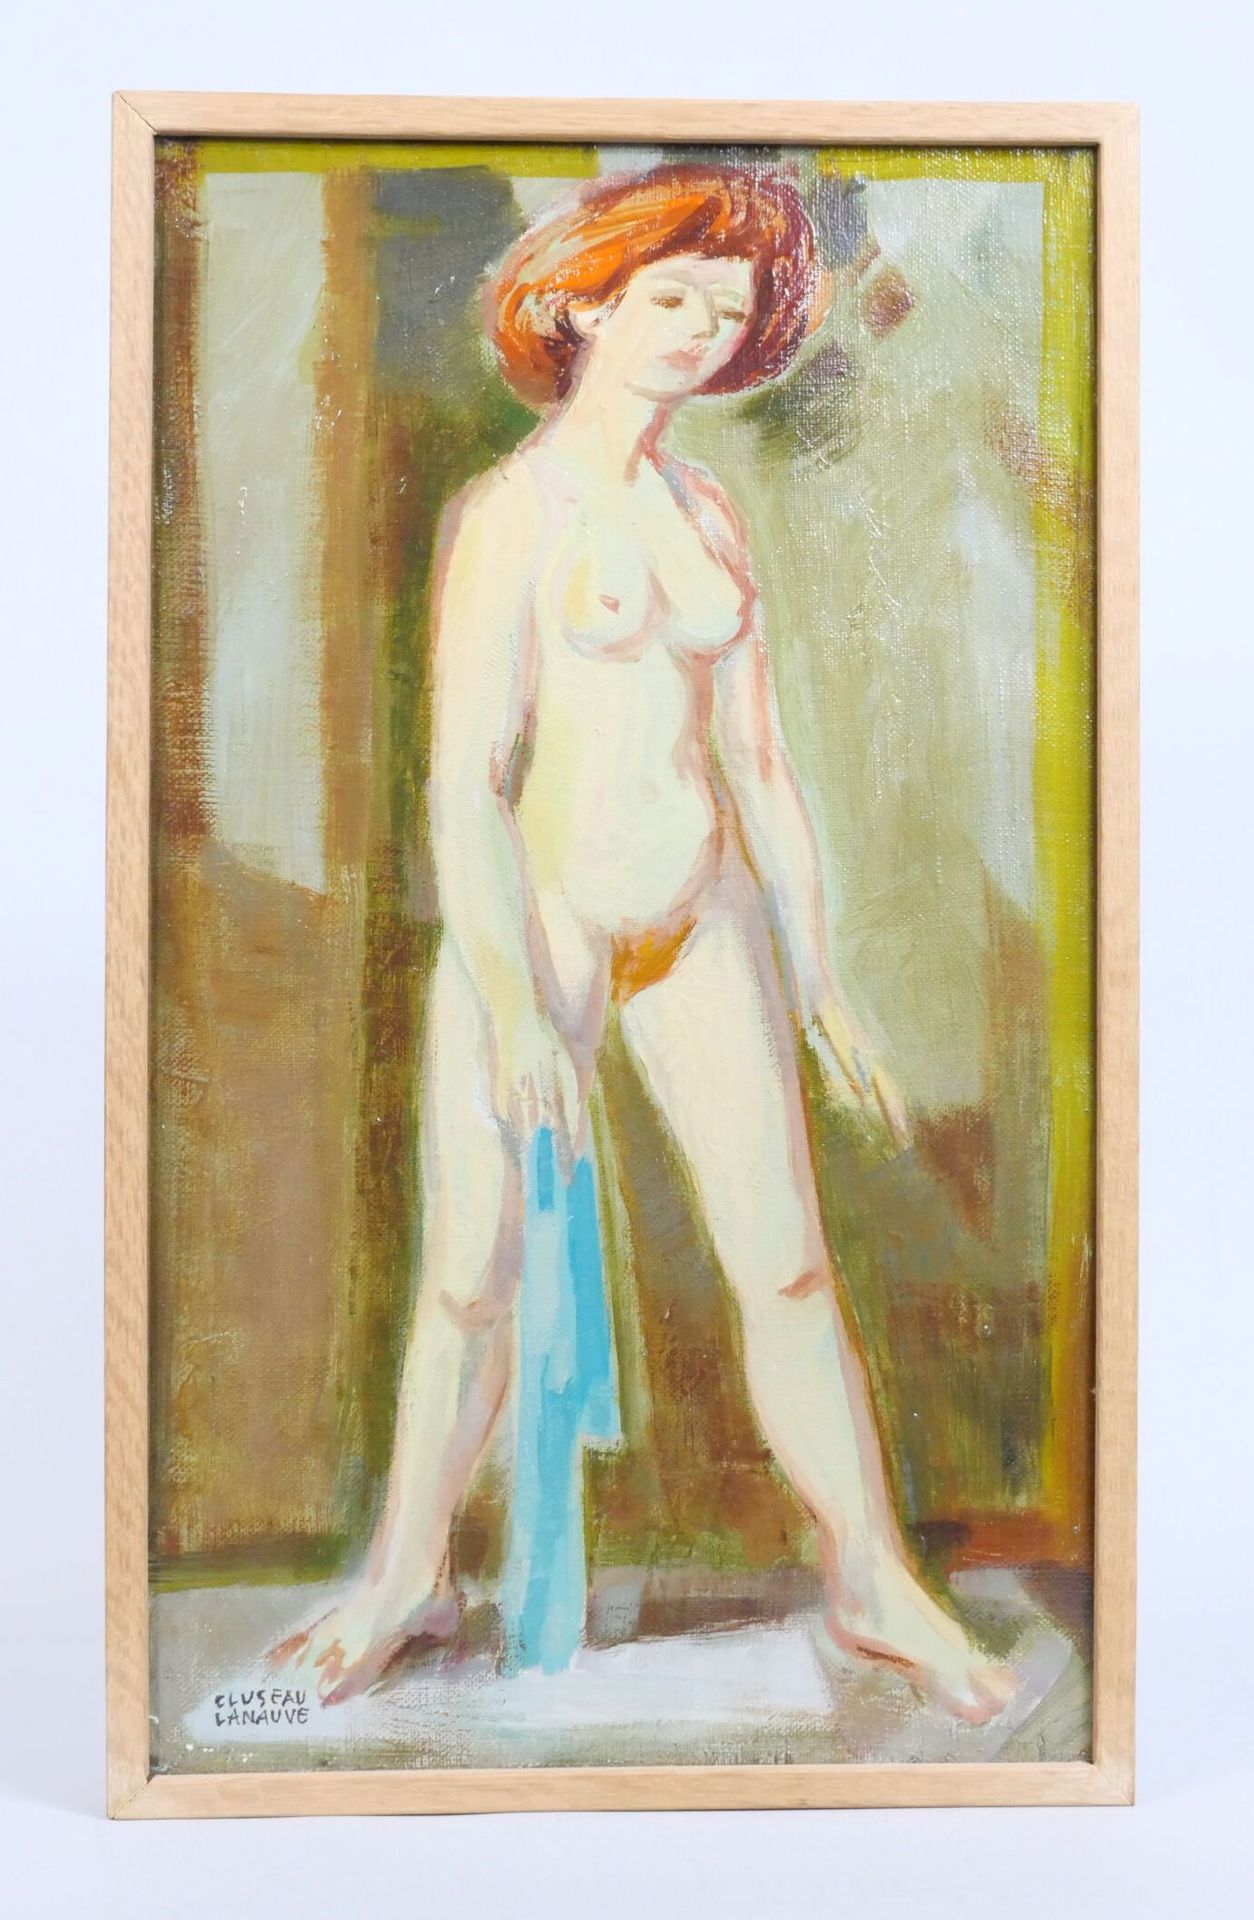 Null 让-克鲁索-拉诺夫 (1914-1997)
"戴着蓝色面纱的红头发"。
布面油画，左下方有签名，背面有标题和日期1953年
尺寸：42 x 25厘米
&hellip;